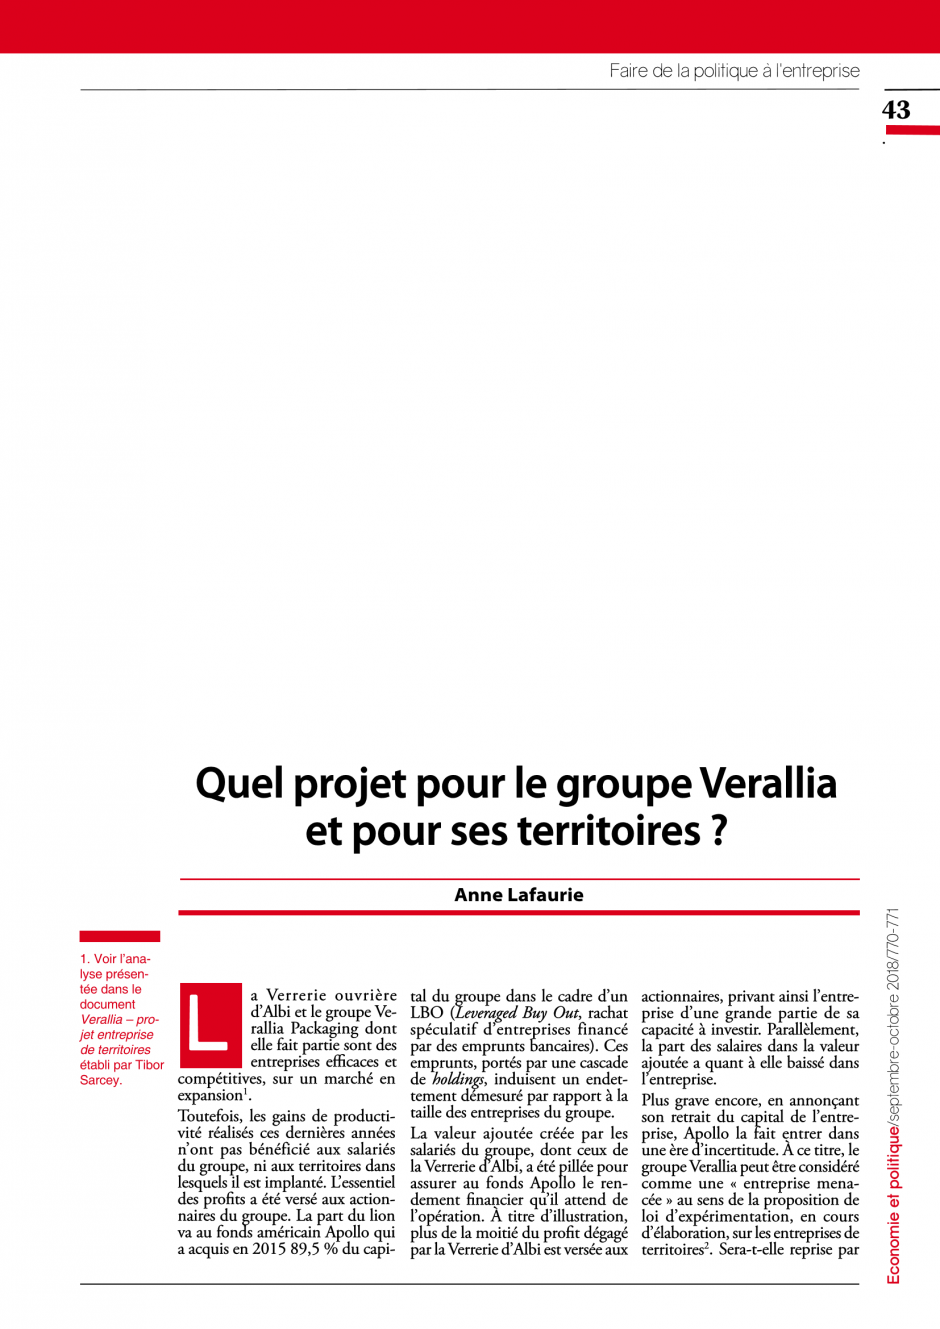 Quel projet pour le groupe Verallia et pour ses territoires ?